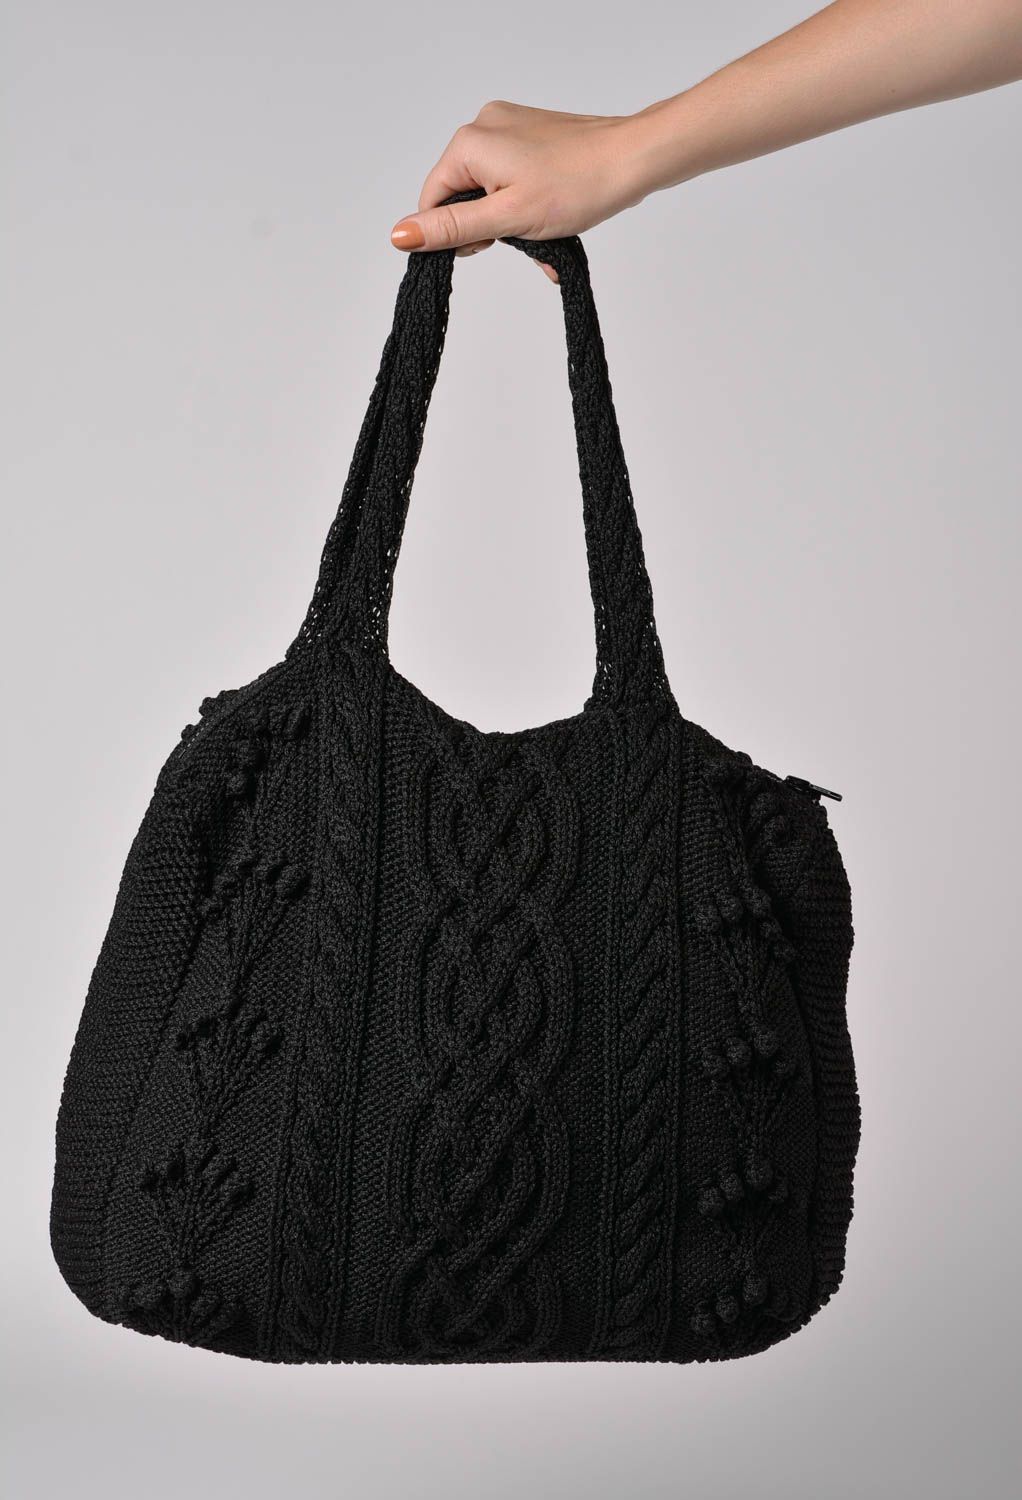 Вязаная женская сумочка спицами черная стильная с подкладкой ручная работа фото 2